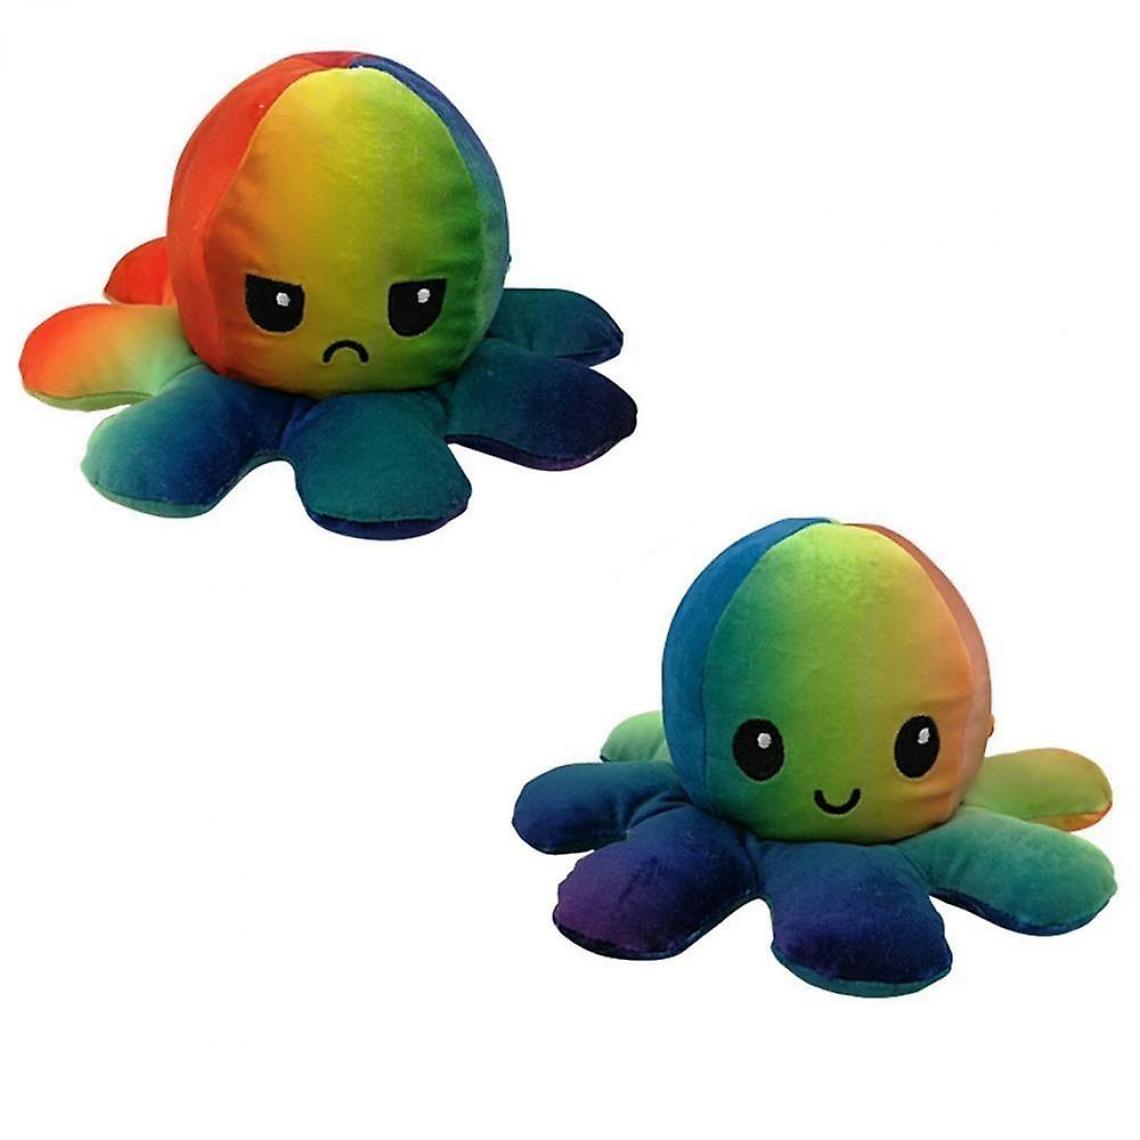 Universal - Peluche flip mignonne poupée en peluche, jouet réversible émulation douce (multicolore) - Animaux